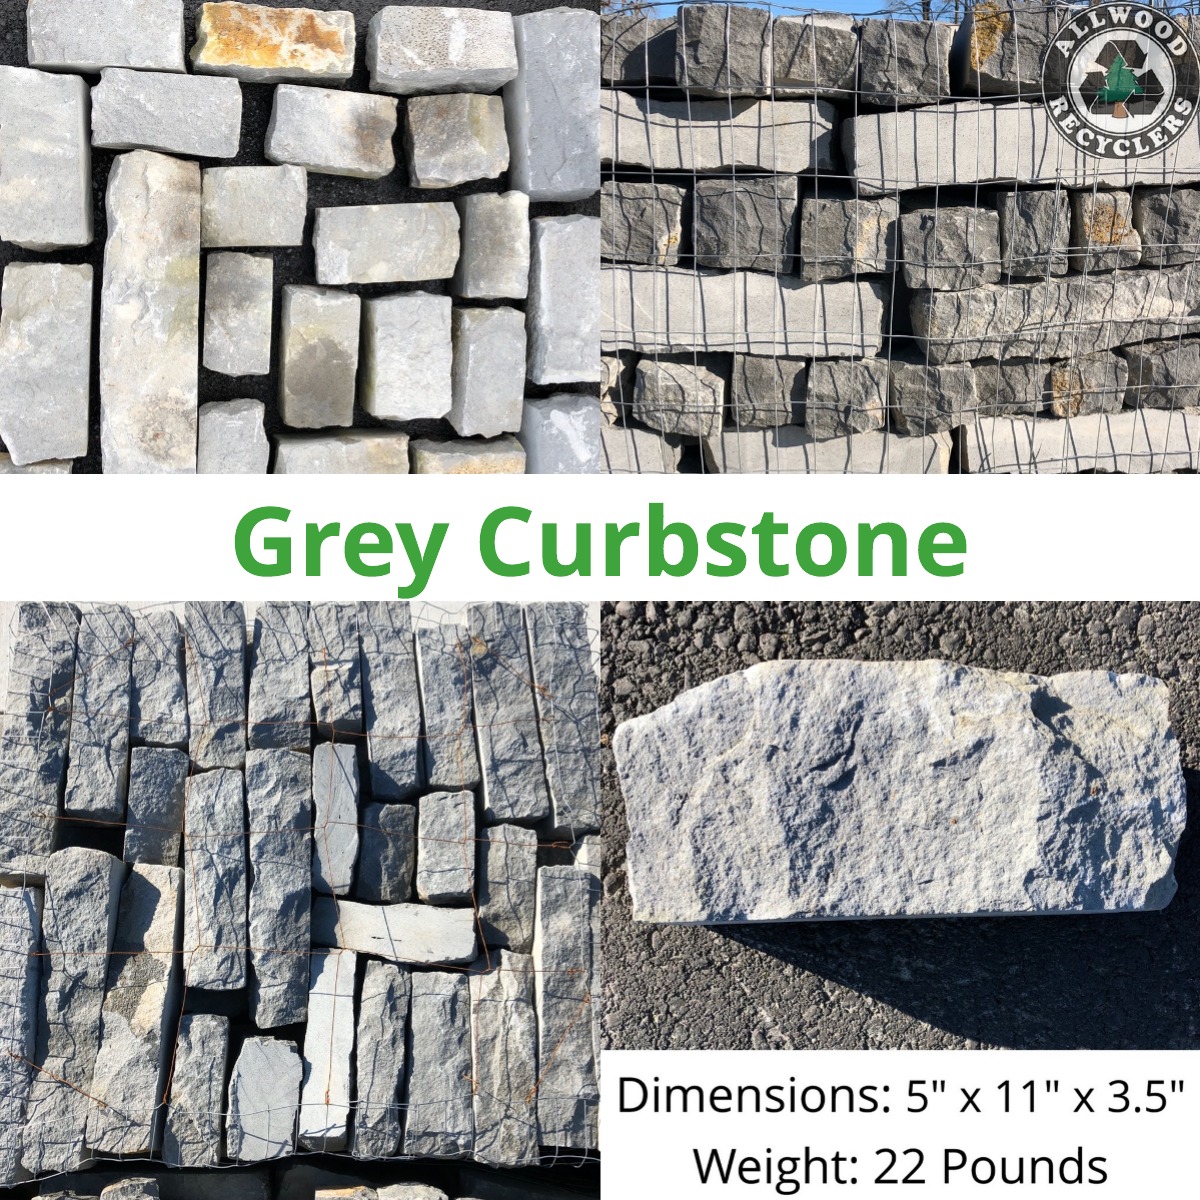 Grey Curbstone